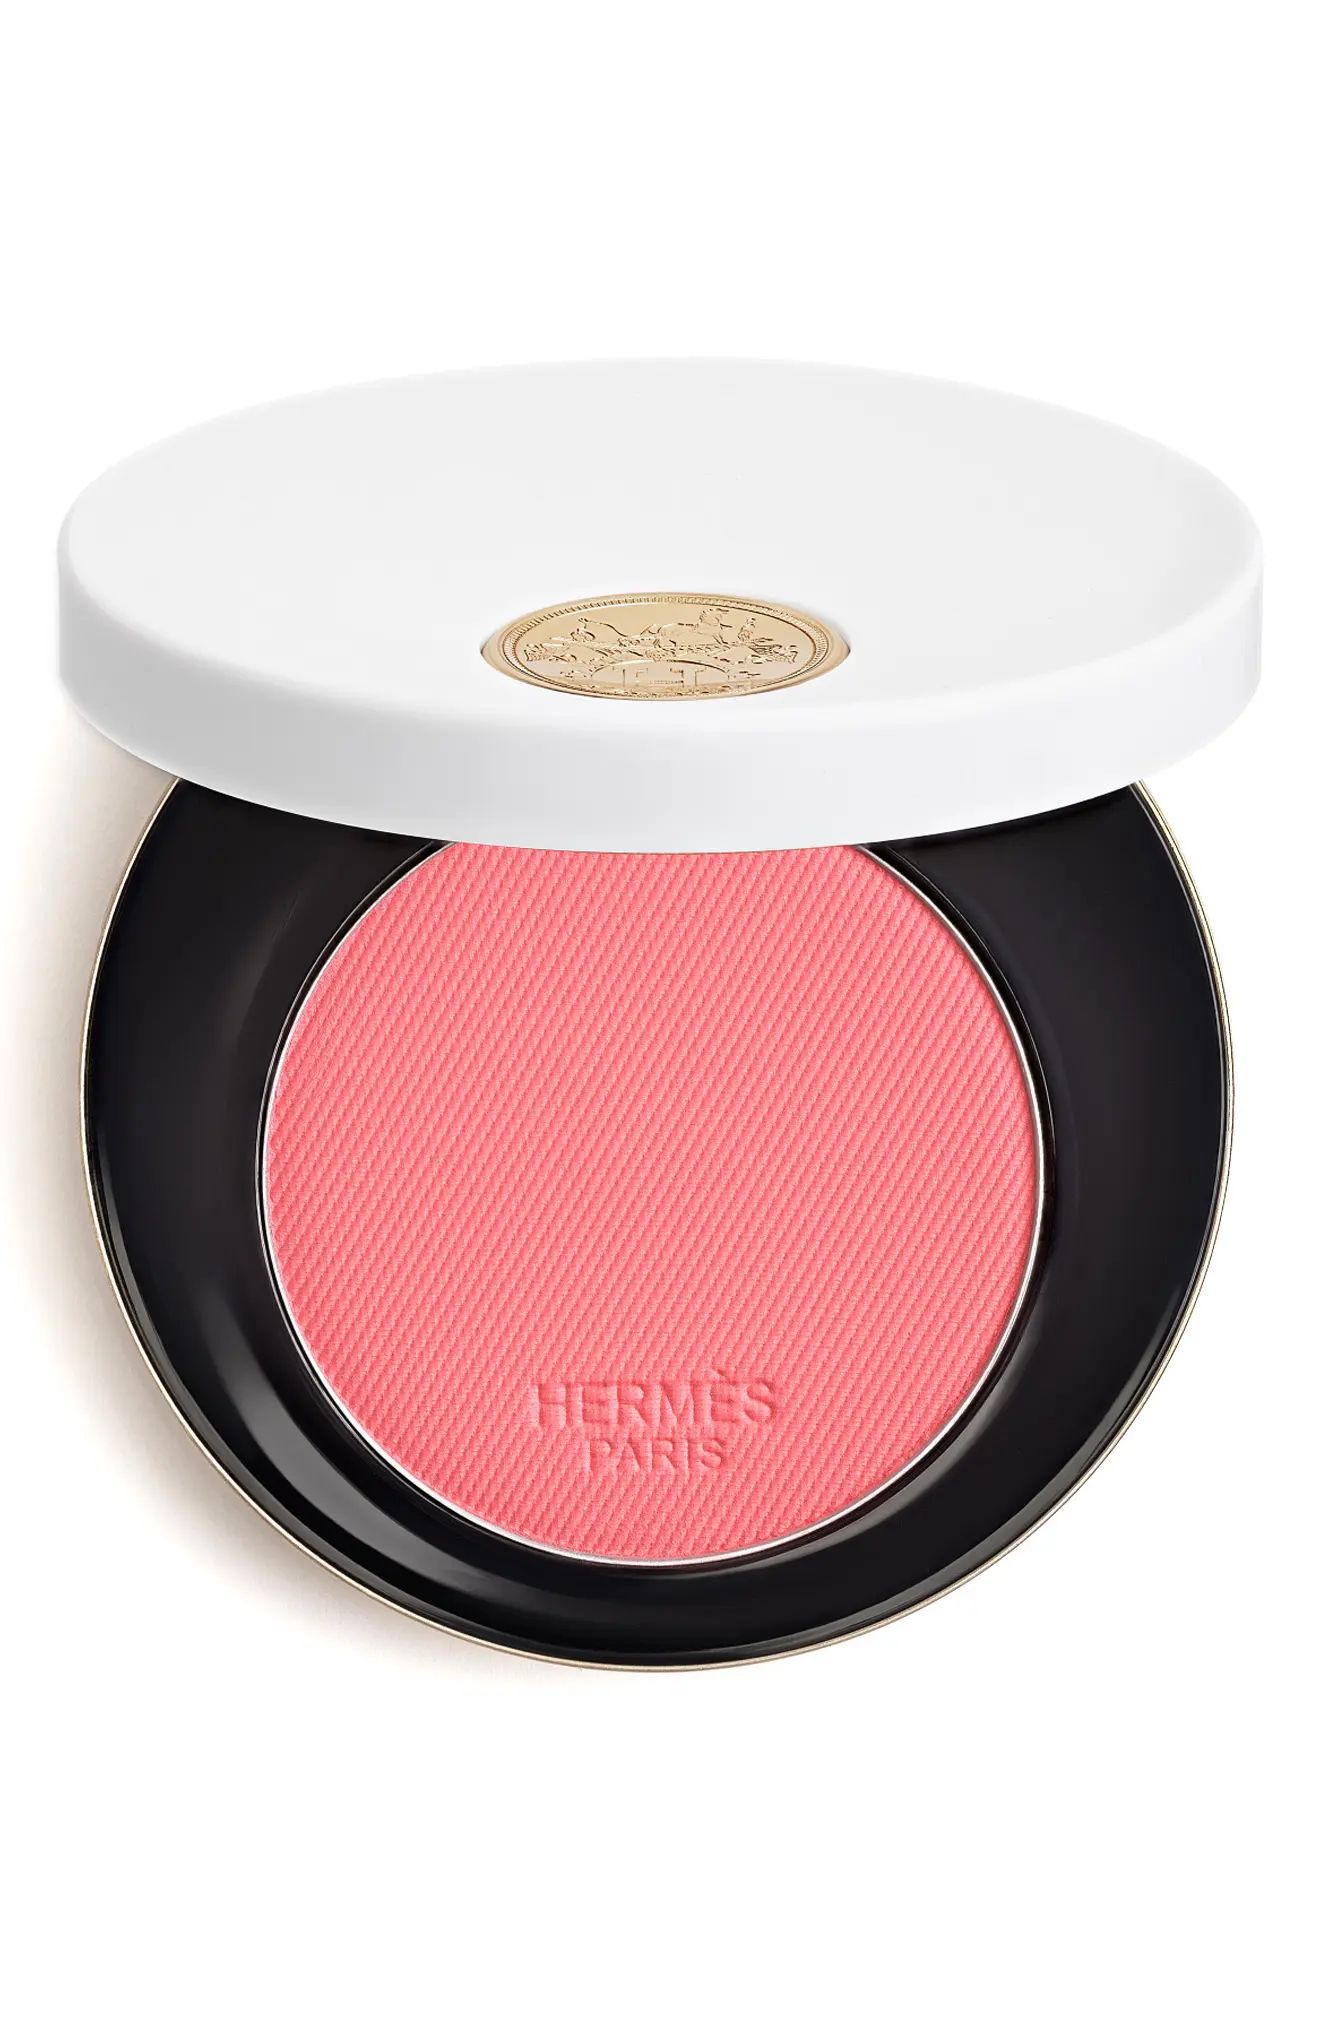 HERMES Rose Hermes - Silky blush powder in 32 Rose Pommette at Nordstrom | Nordstrom